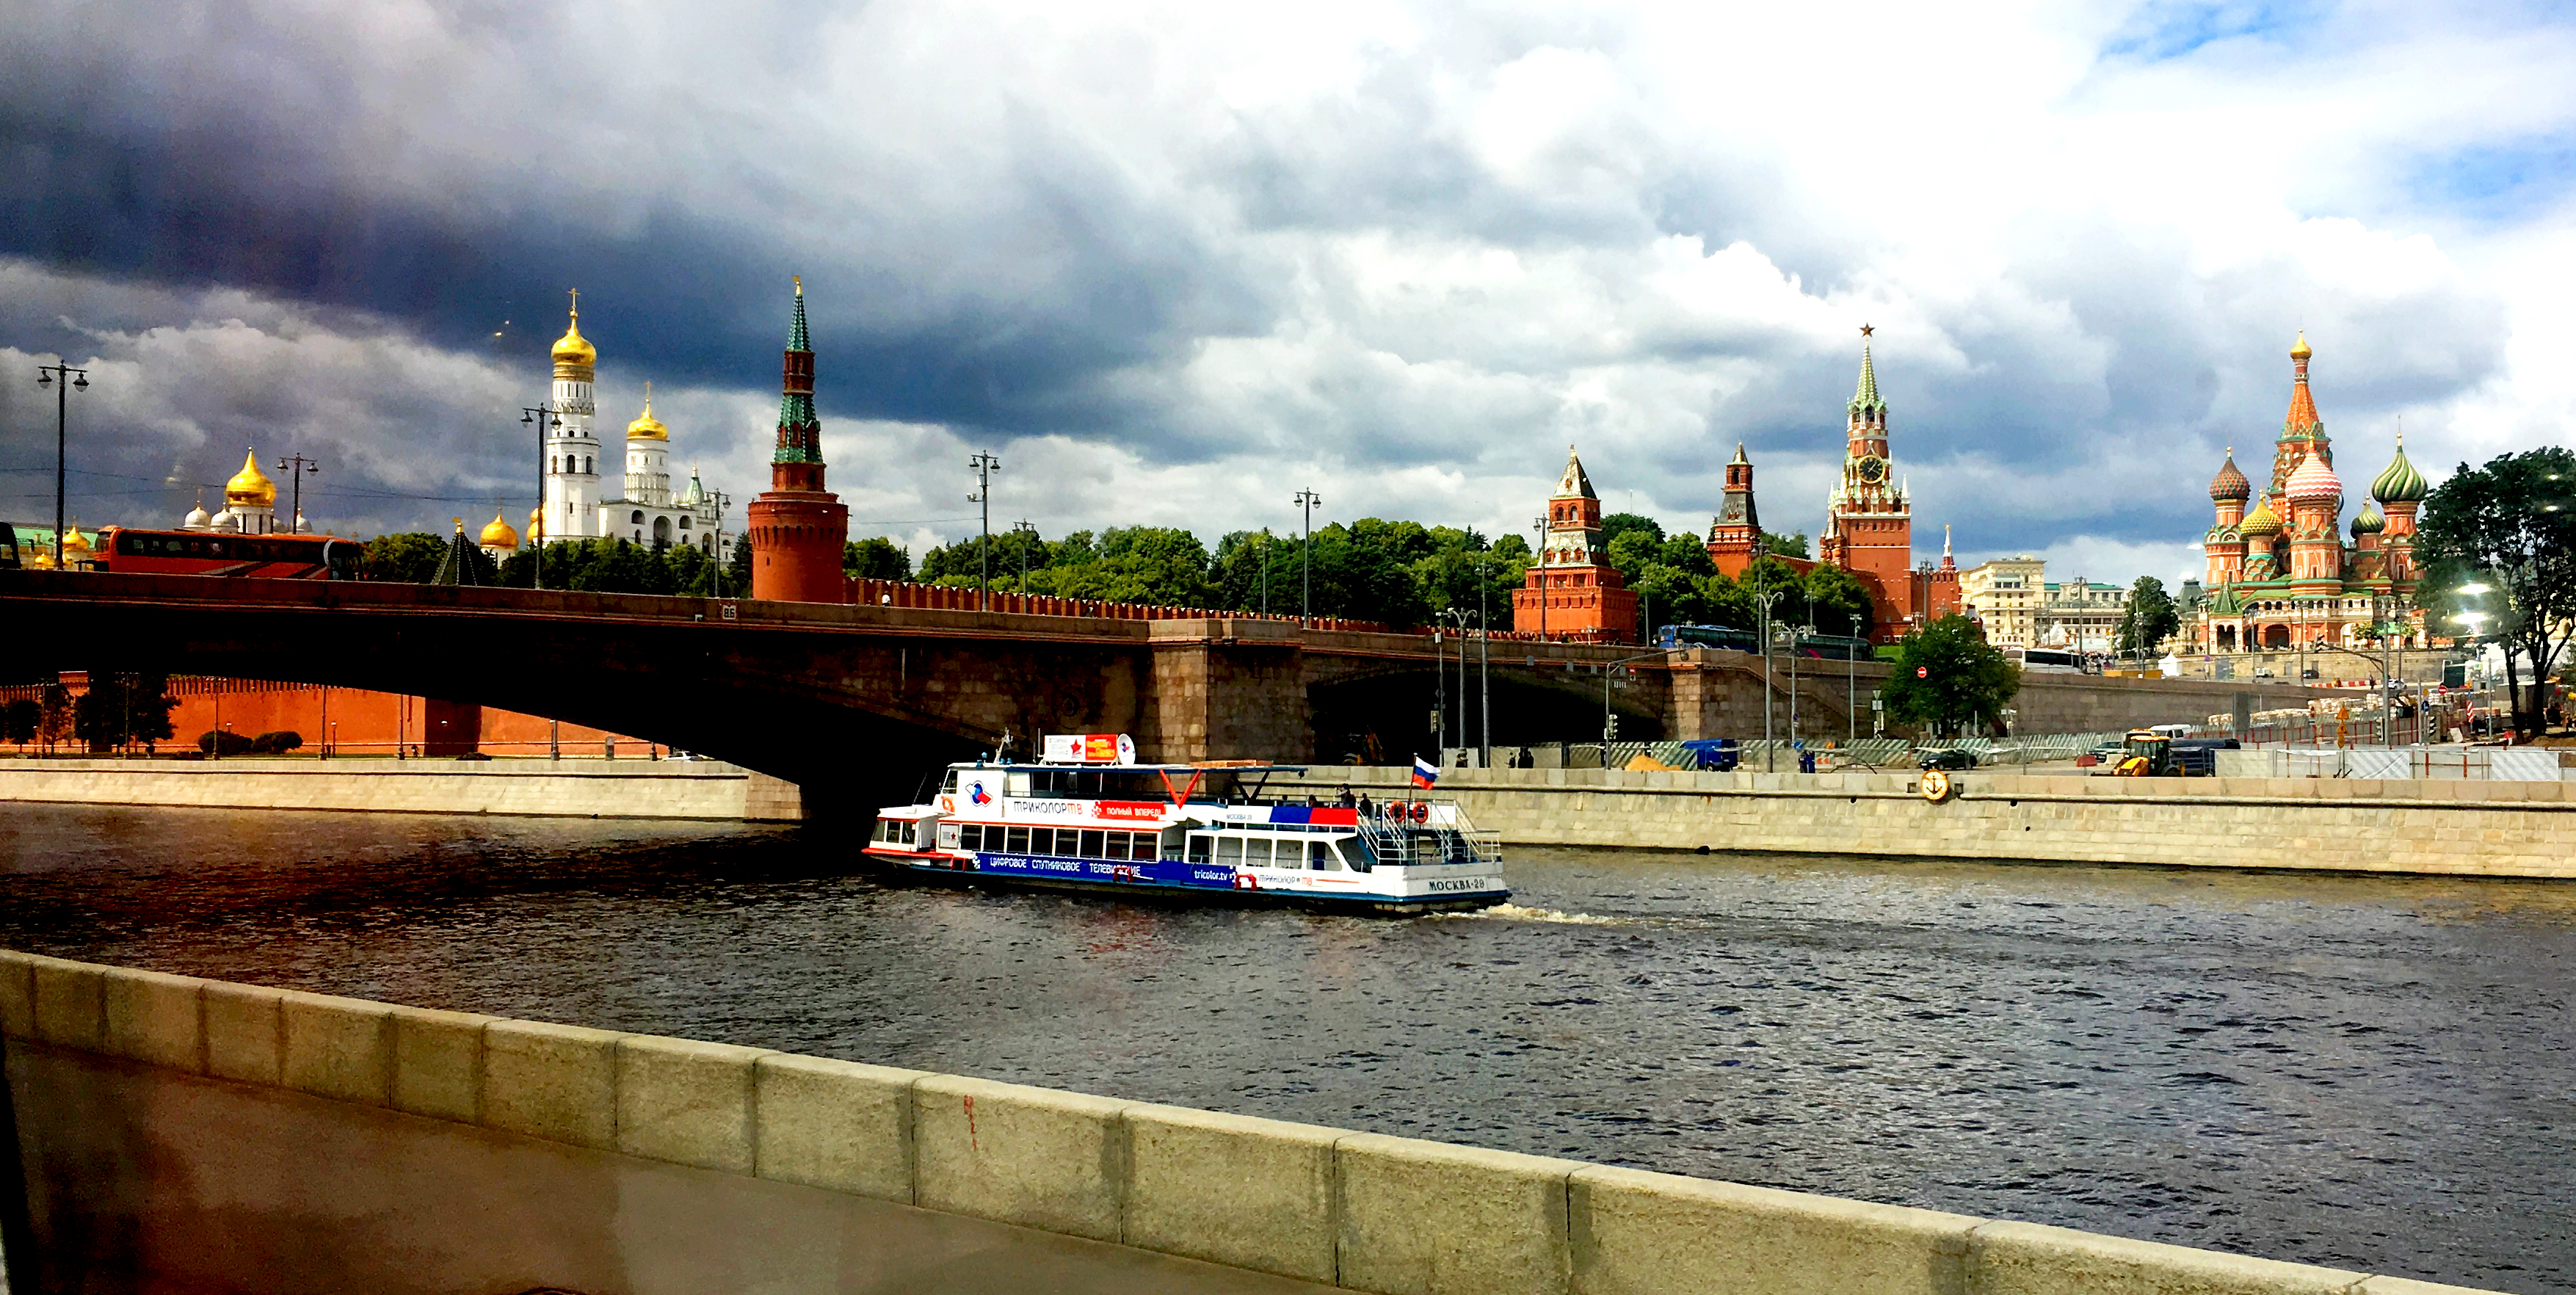 莫斯科 俄罗斯 河 - Pixabay上的免费照片 - Pixabay